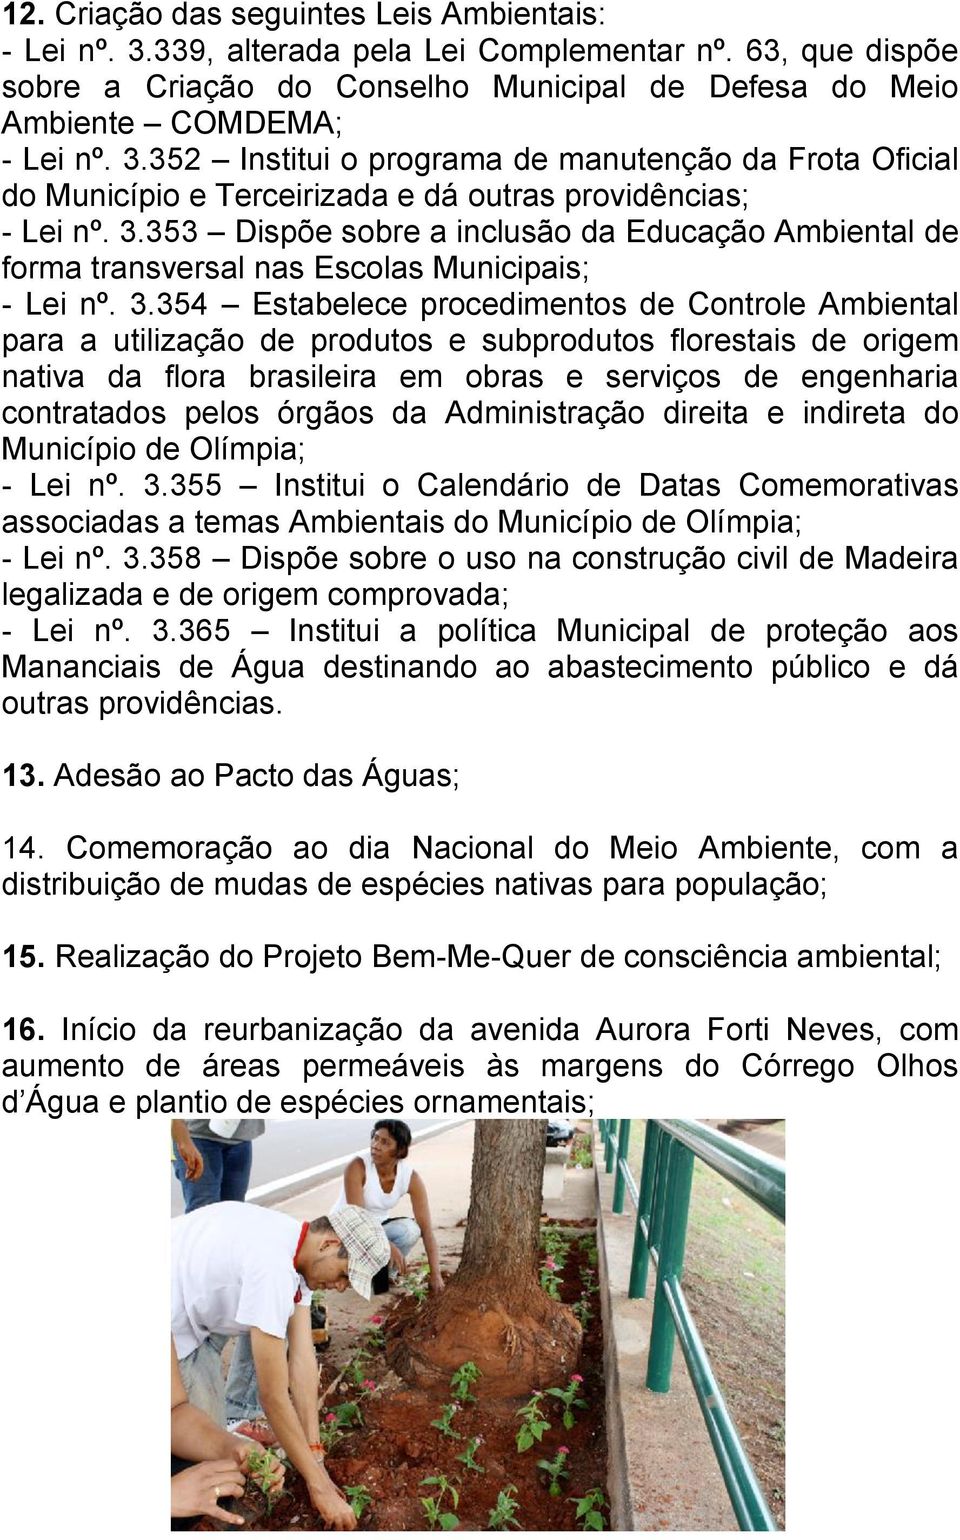 354 Estabelece procedimentos de Controle Ambiental para a utilização de produtos e subprodutos florestais de origem nativa da flora brasileira em obras e serviços de engenharia contratados pelos